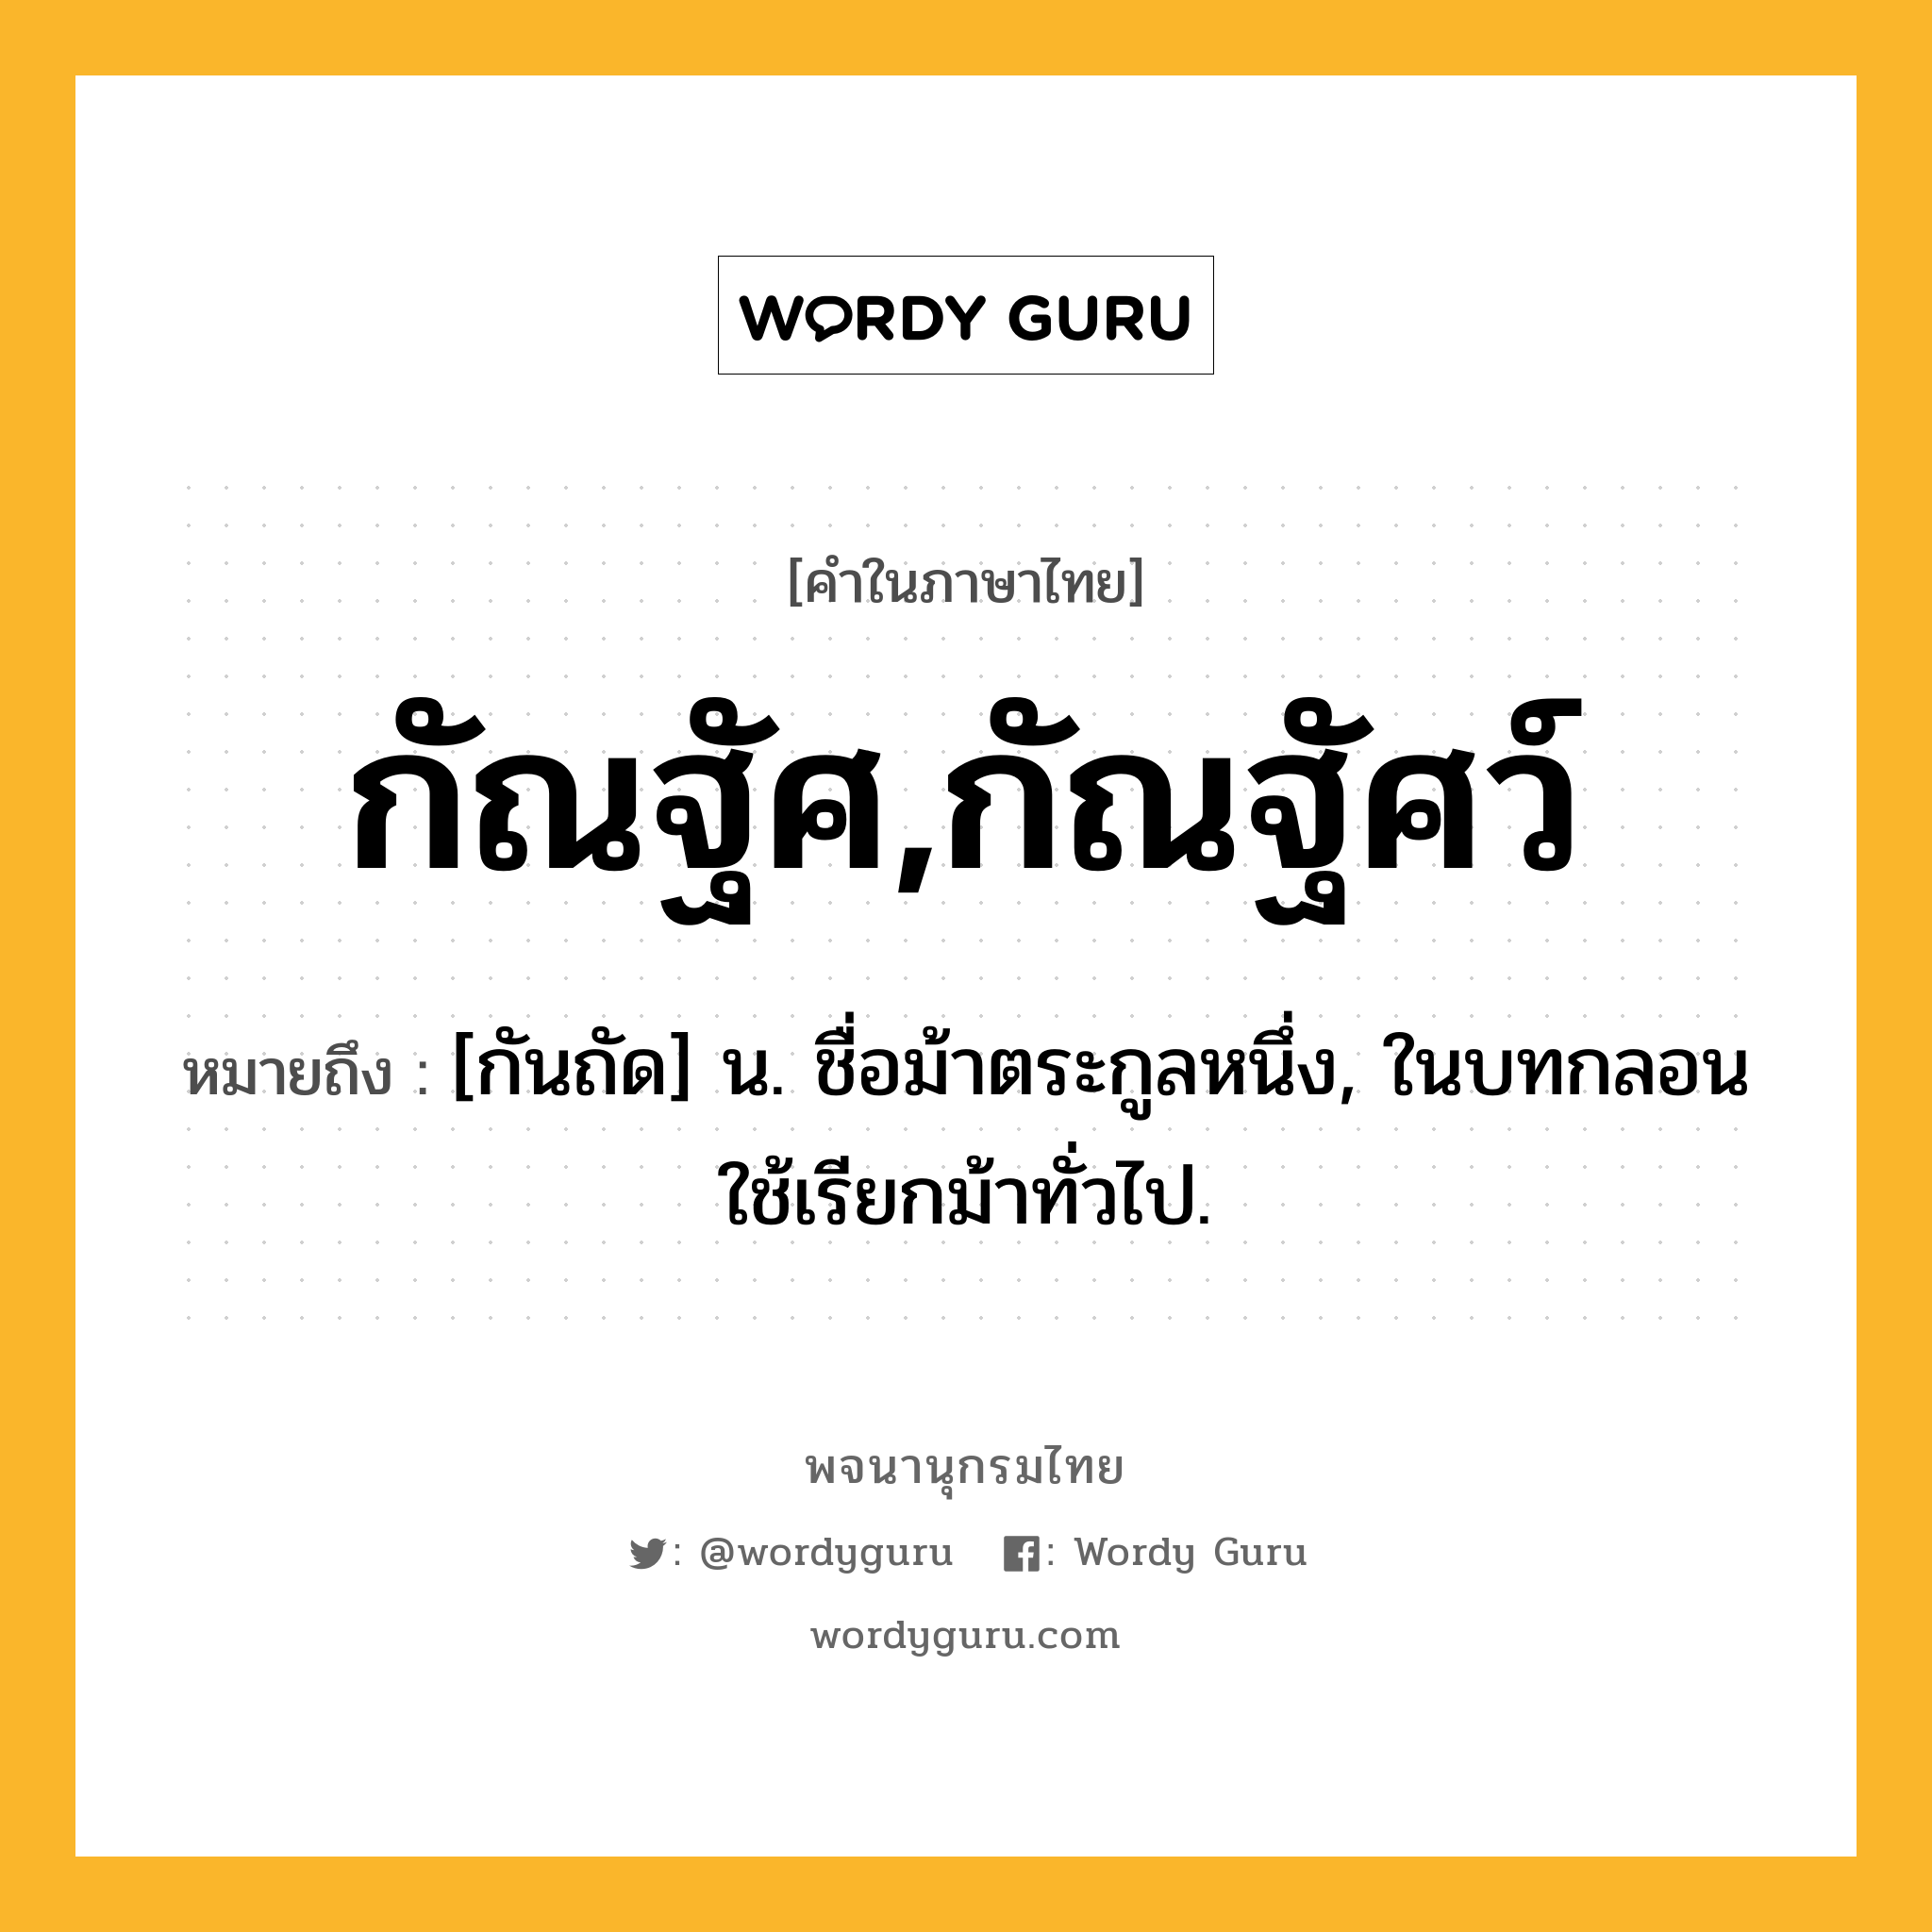 กัณฐัศ,กัณฐัศว์ หมายถึงอะไร?, คำในภาษาไทย กัณฐัศ,กัณฐัศว์ หมายถึง [กันถัด] น. ชื่อม้าตระกูลหนึ่ง, ในบทกลอนใช้เรียกม้าทั่วไป.